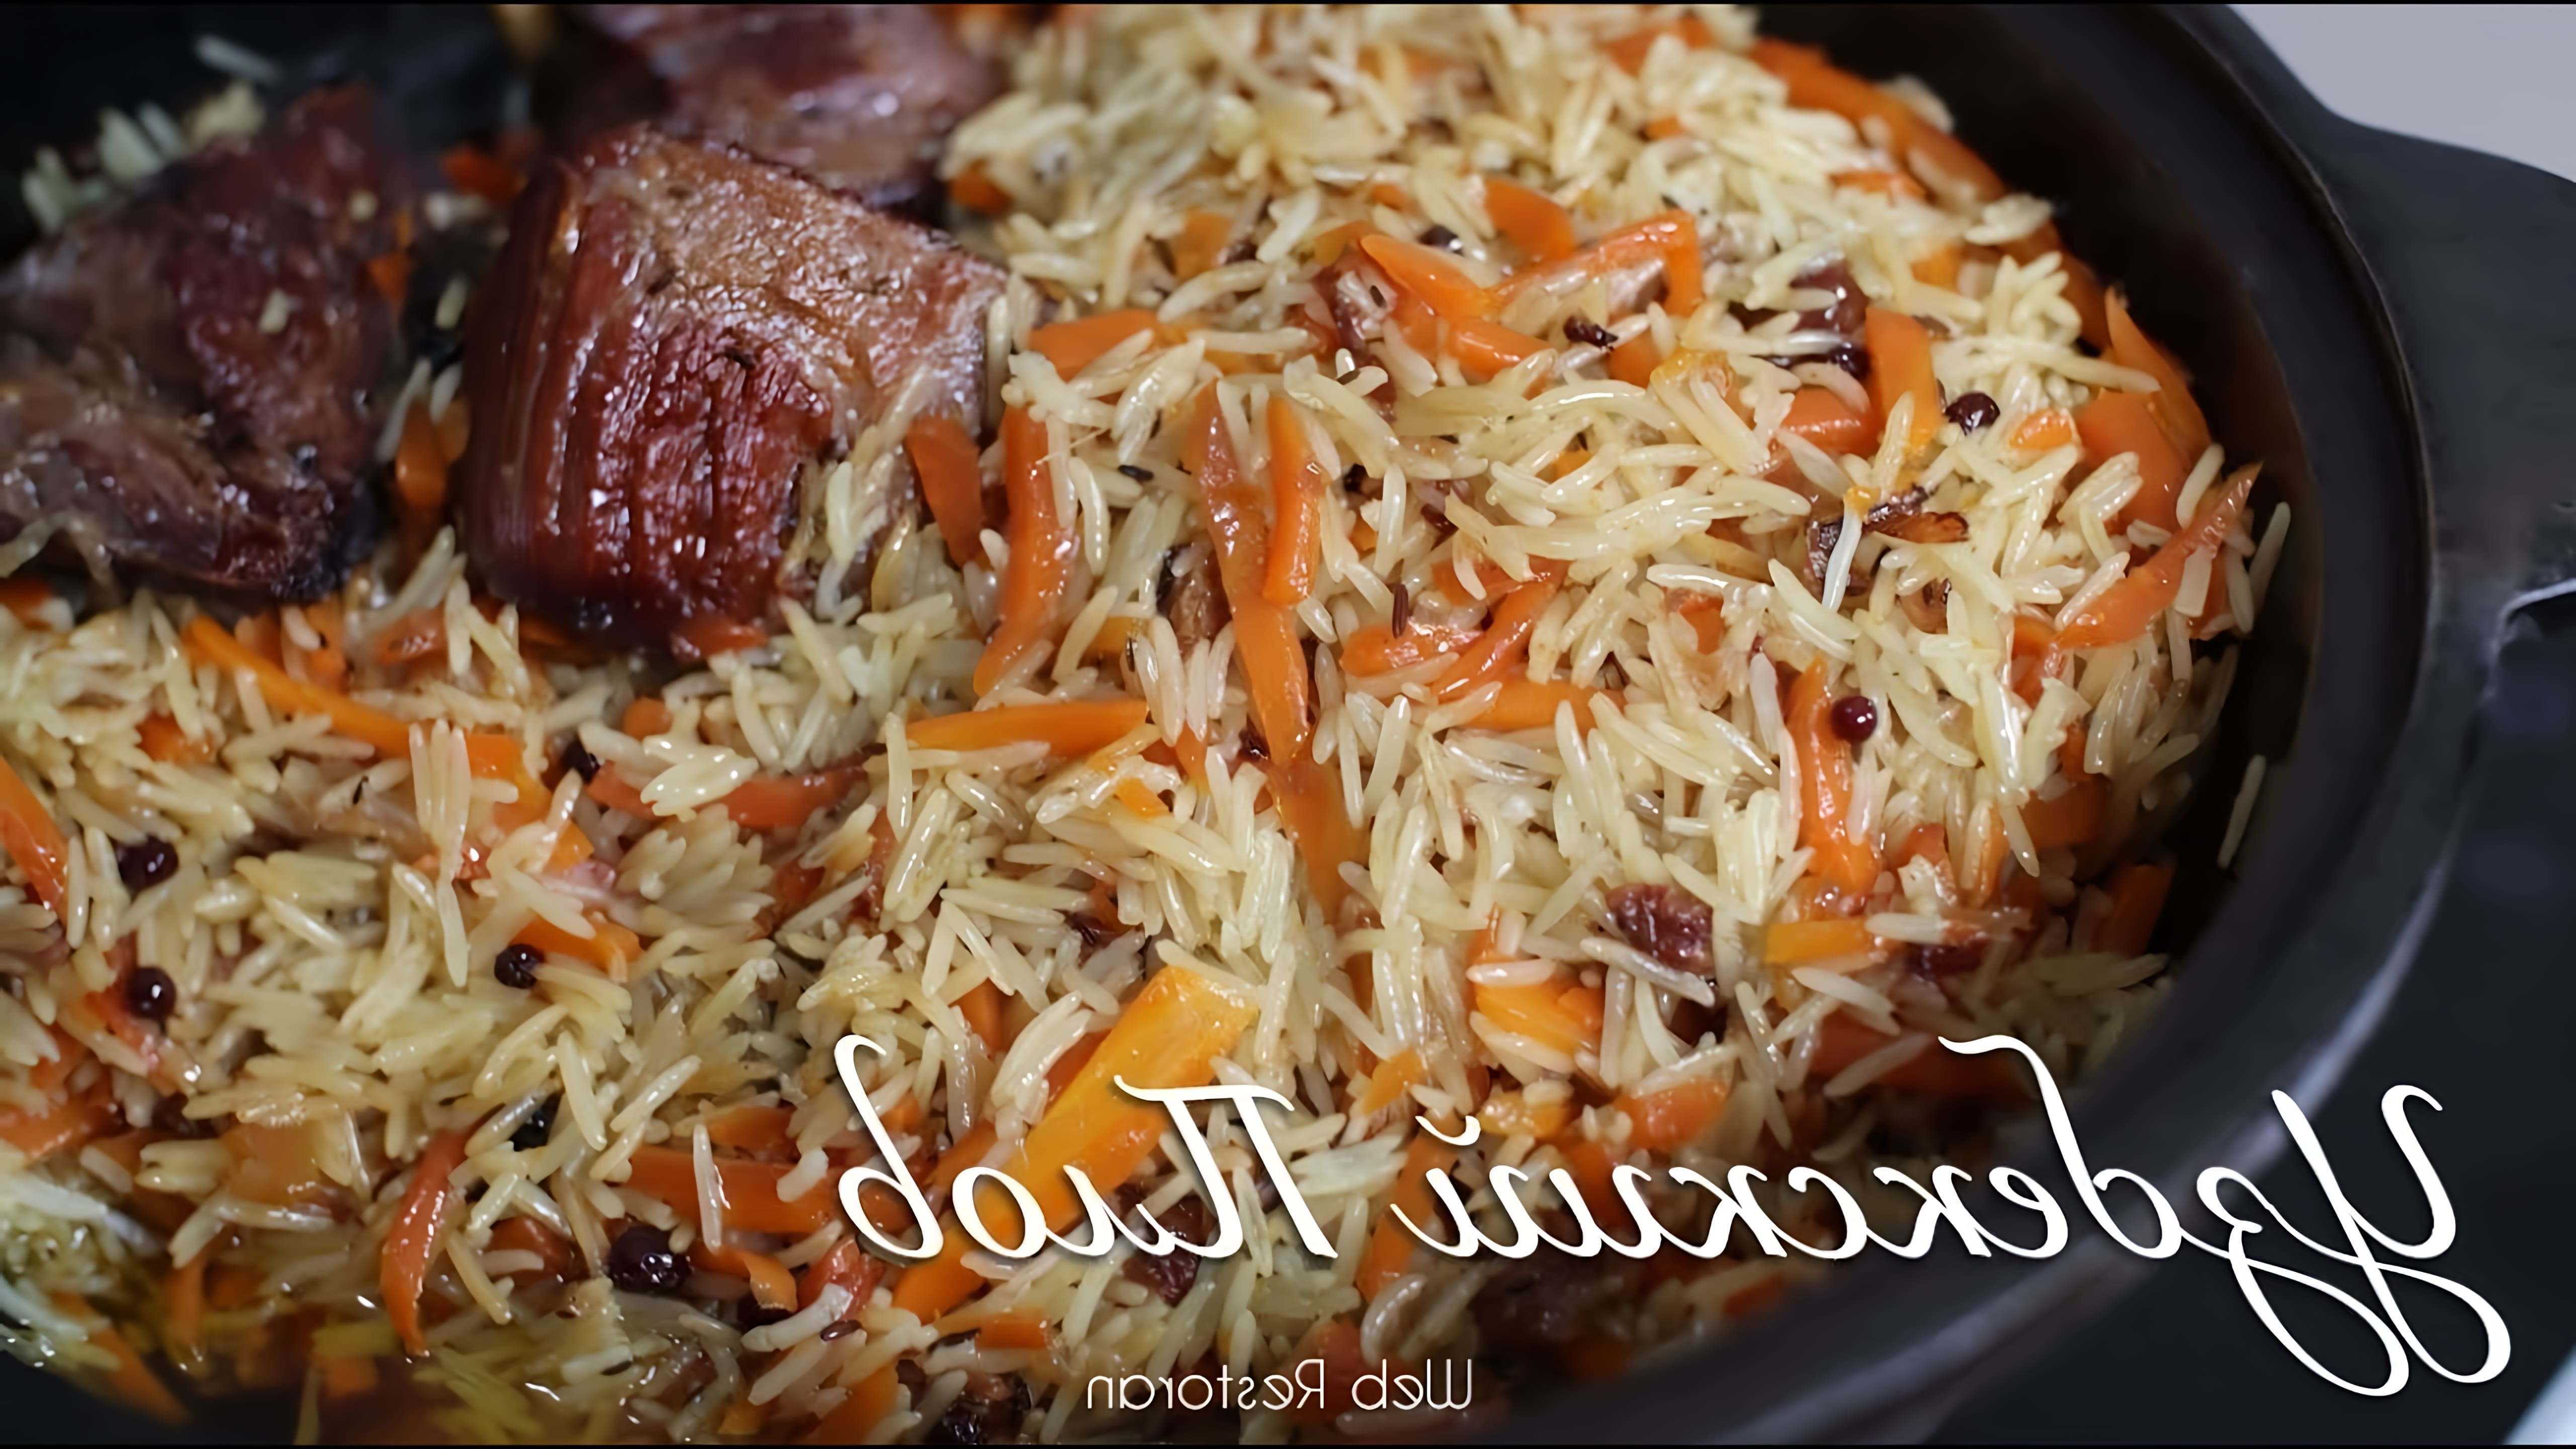 Узбекский плов - это традиционное блюдо узбекской кухни, которое готовится из риса, мяса, овощей и специй